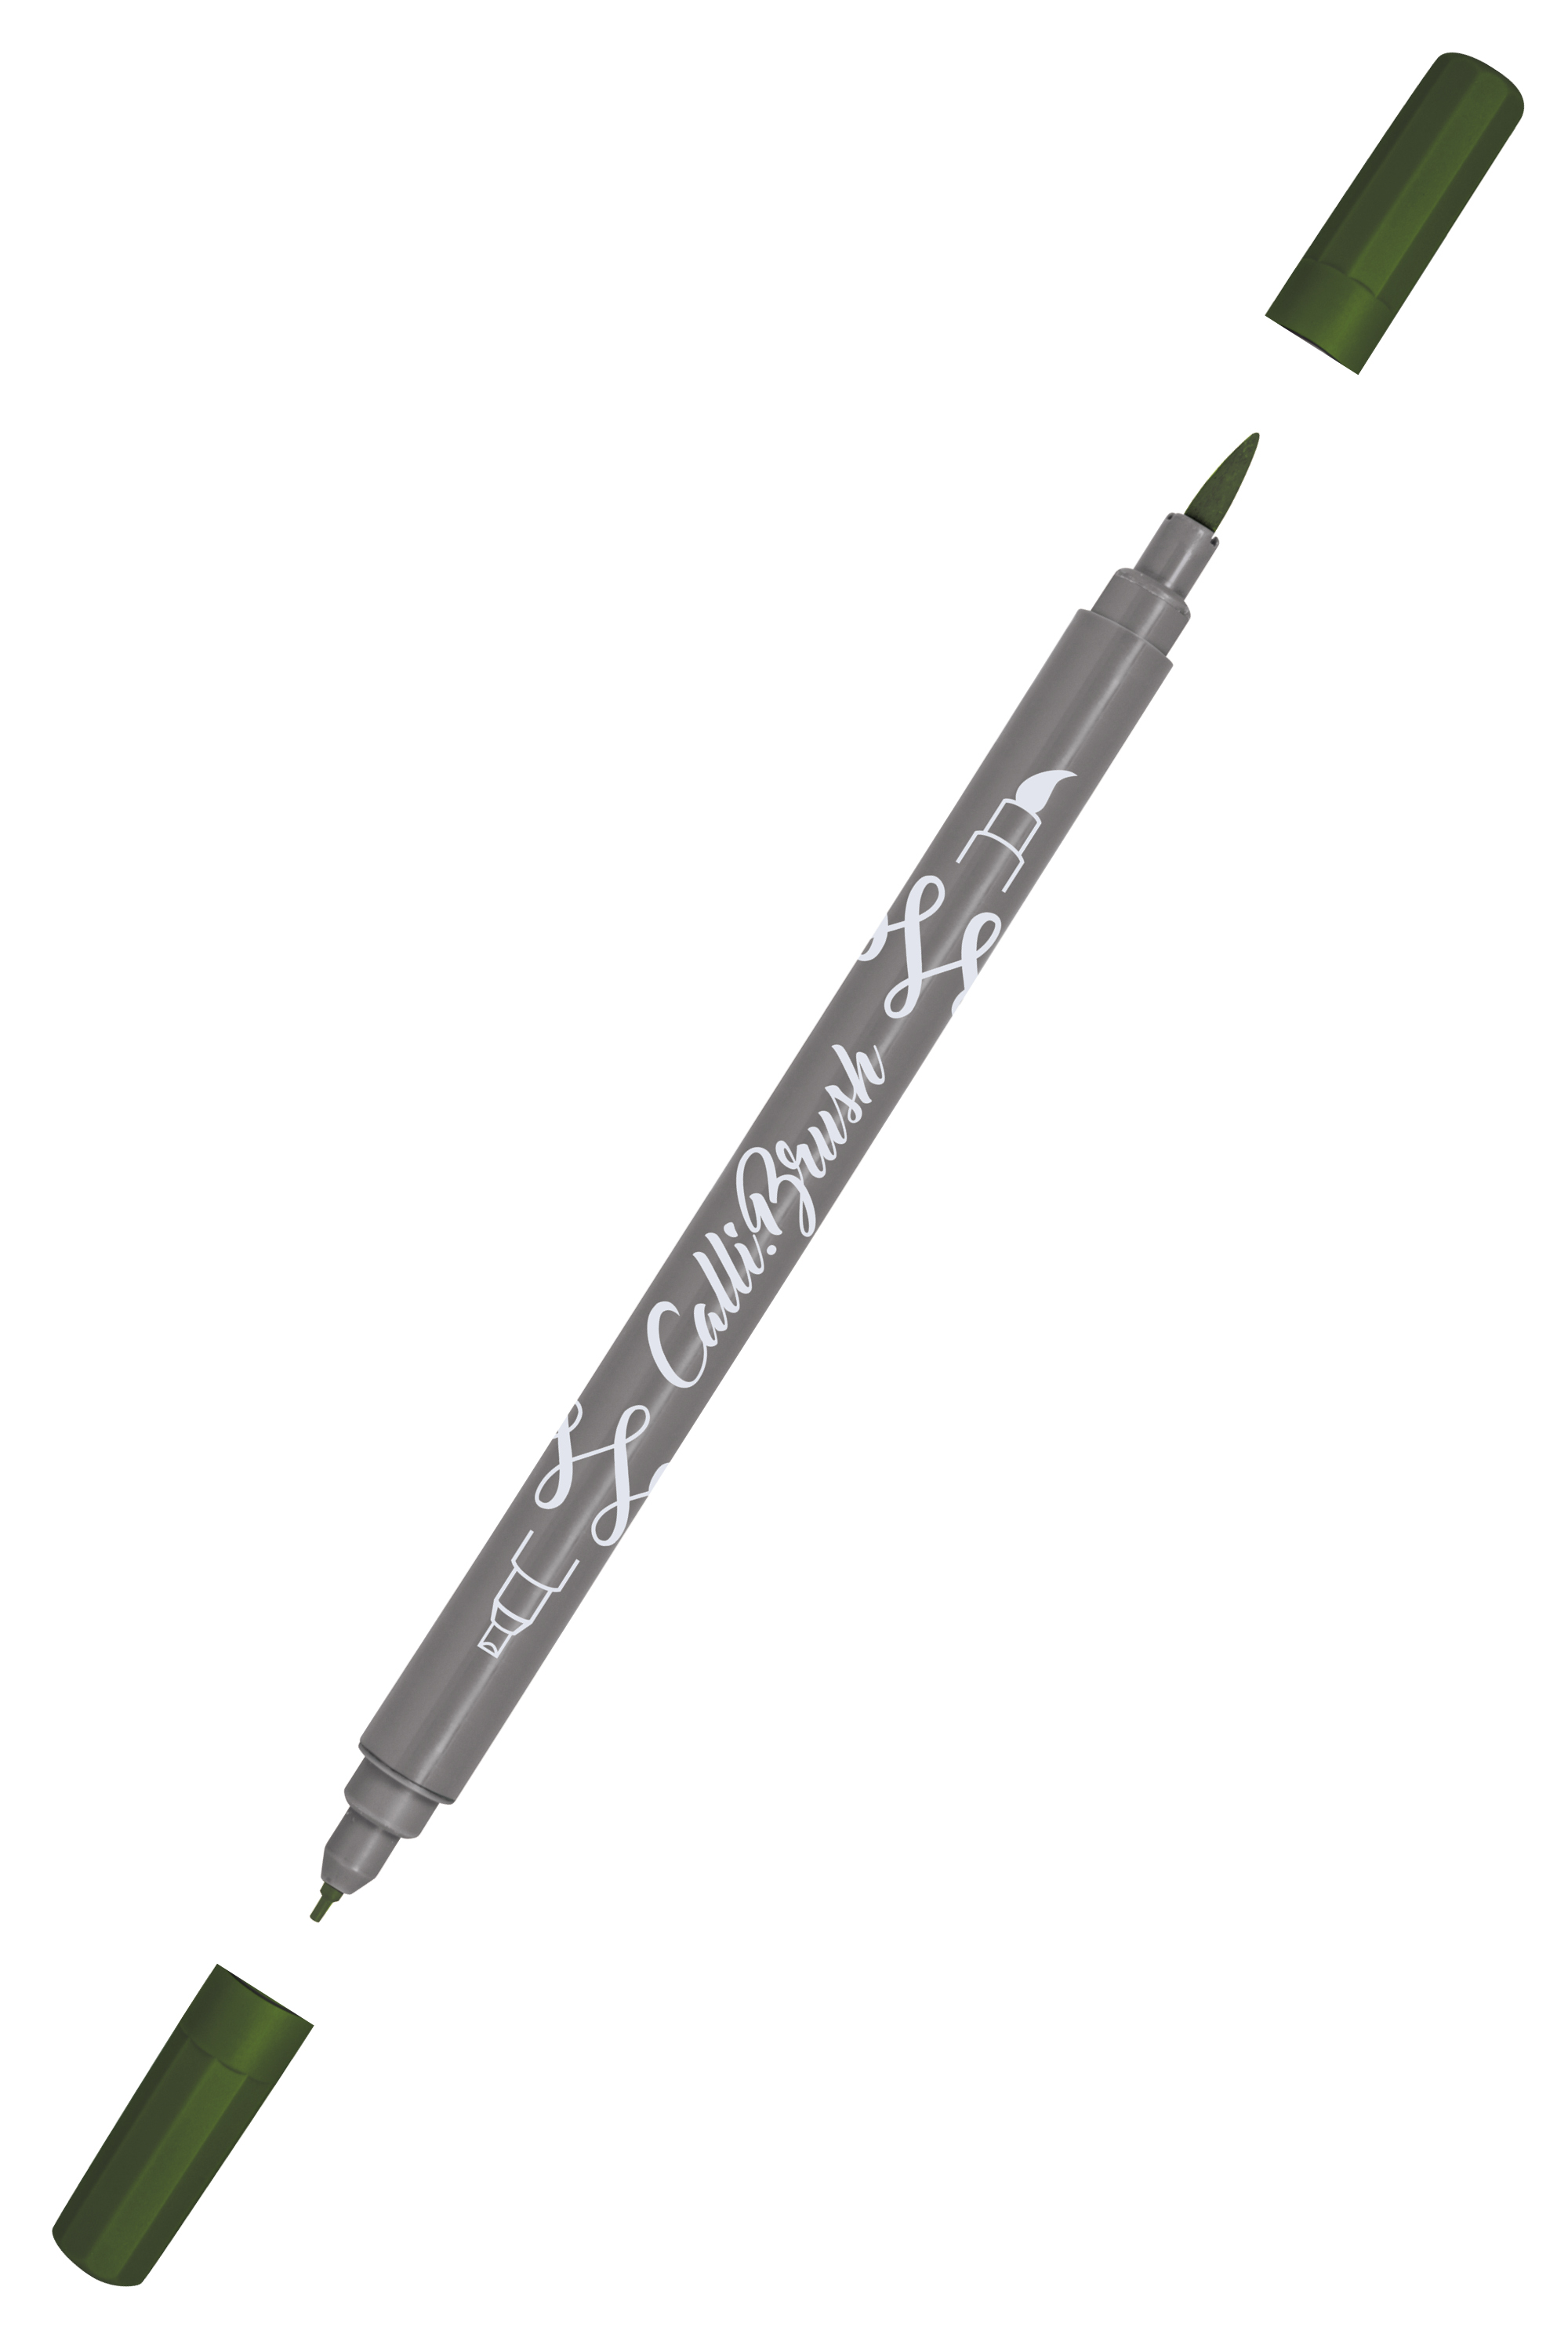 Online Calli.Brush Handlettering Brush-Pens Pastel | Set of 5 brush pens |  Calligraphy Set for Bullet Journal, Hand Lettering | Calligraphy tip 